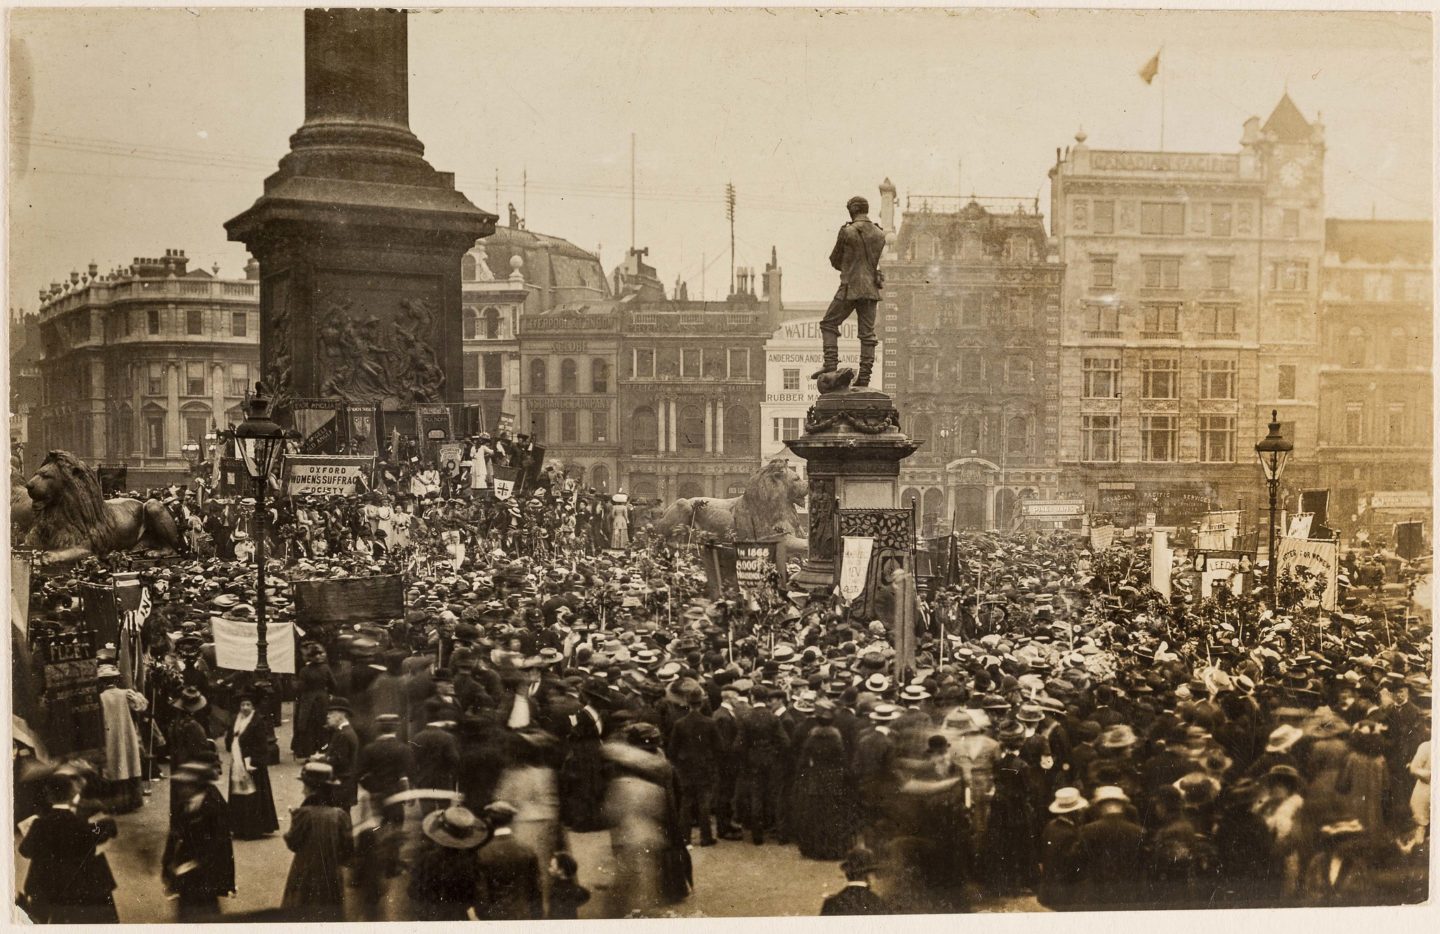 Procesja sufrażystowska, 13 czerwca 1908 roku. / Suffrage Procession, 13th of June 1908.